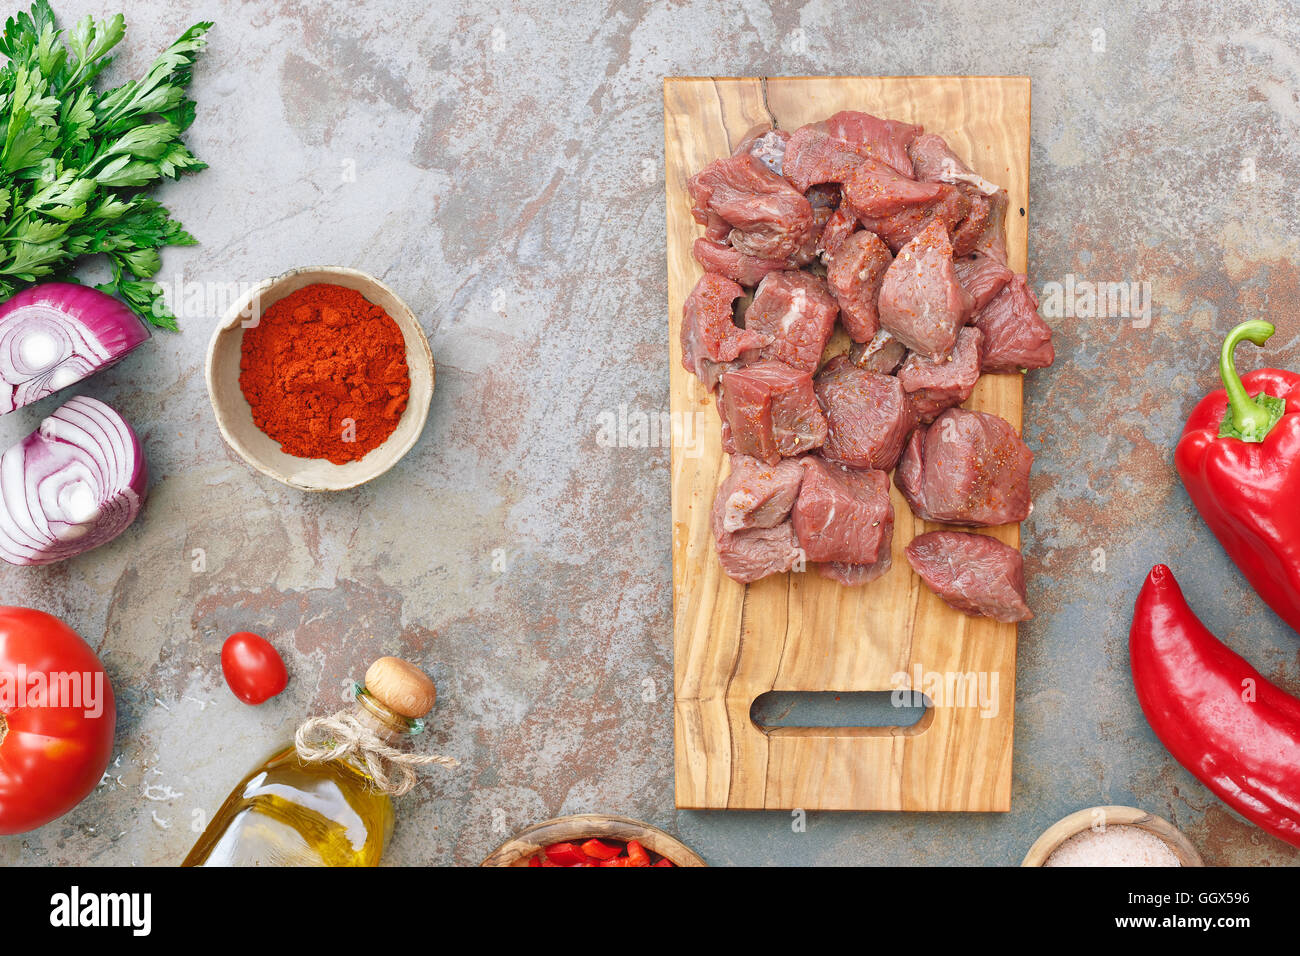 Carni bovine per gulasch. I cubetti di carne su un vecchio tagliere di legno e gli ingredienti per cucinare su sfondo rustico Foto Stock